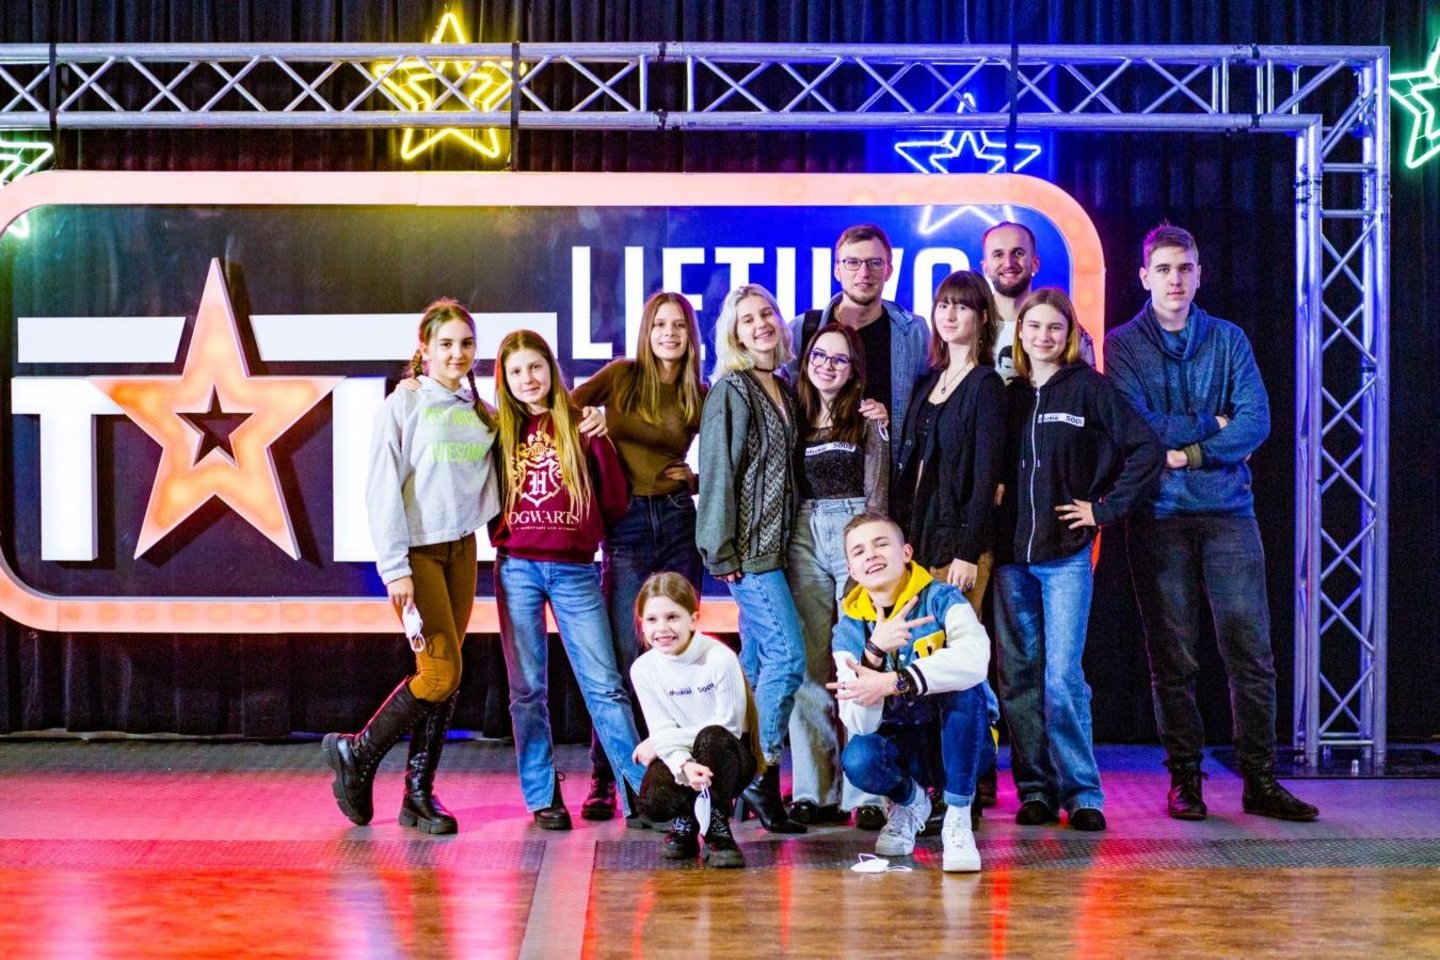 Klaipėdos valstybinio muzikinio teatro vaikų operos studijos nariai puikiai pasirodė TV šou „Lietuvos talentai“.